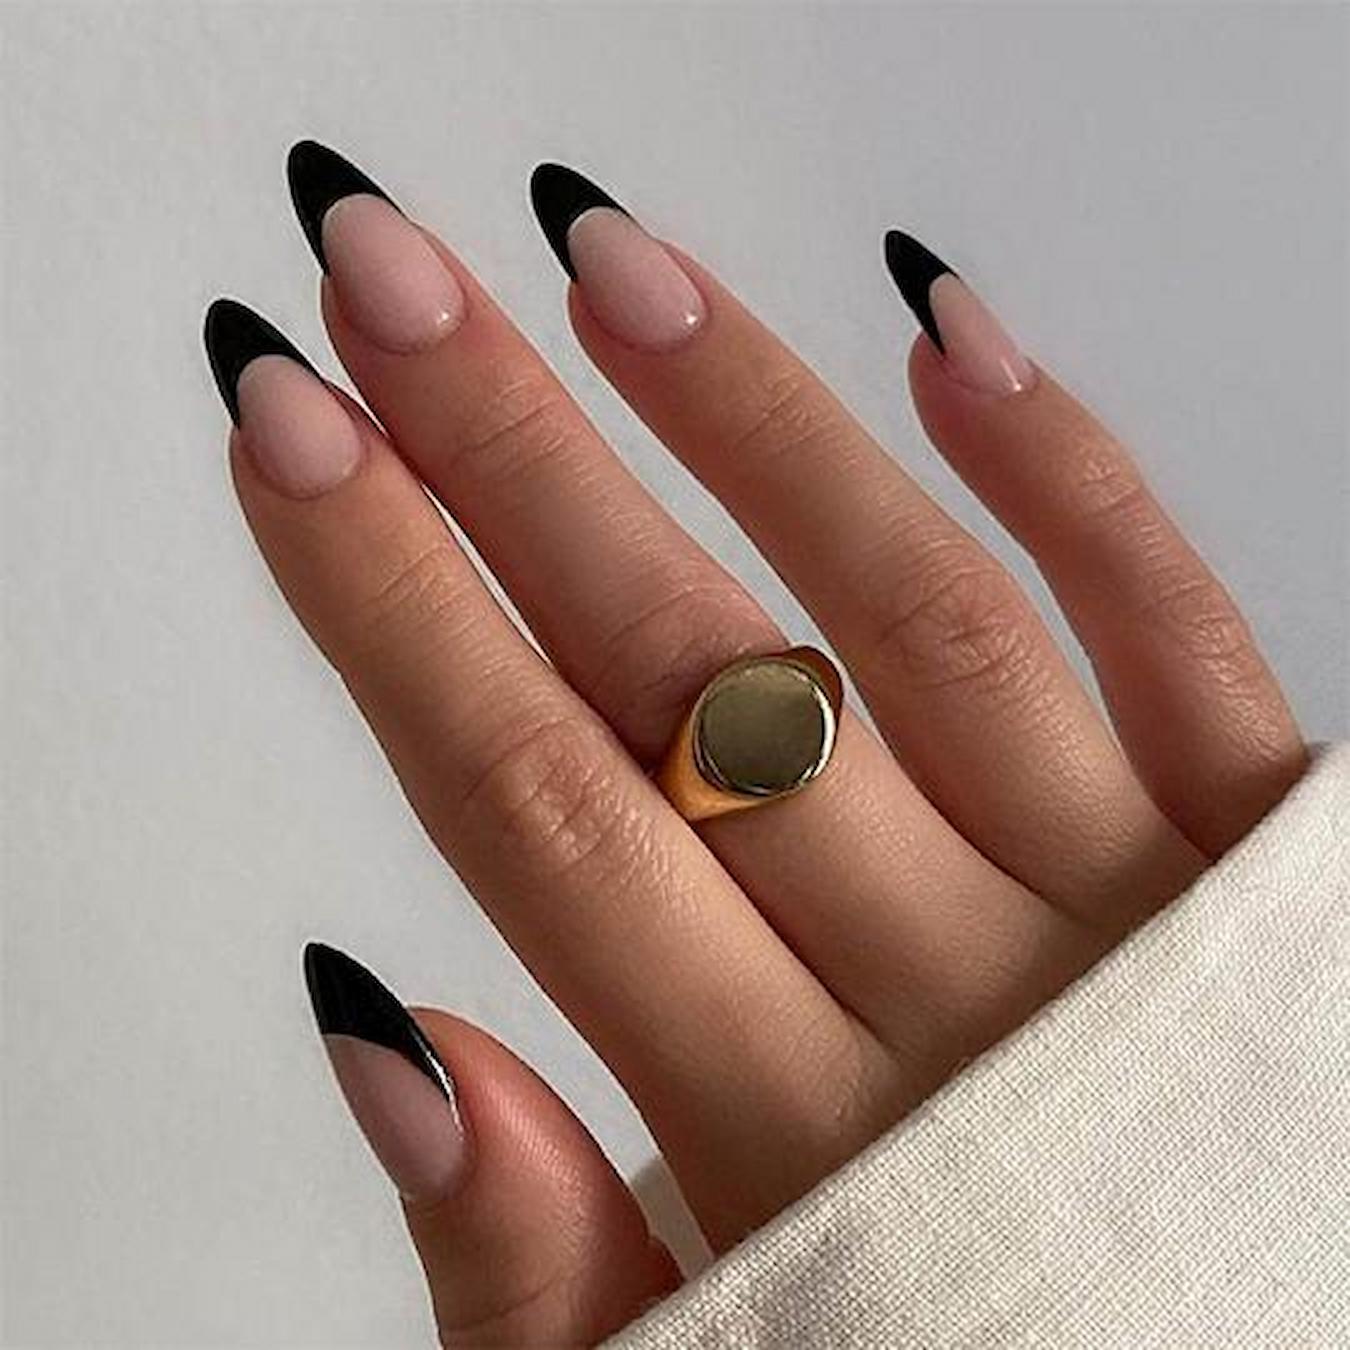 40 Black Nail Designs To Try This Year - Ray Amaari | Manicura de uñas,  Uñas elegantes y sencillas, Manicura